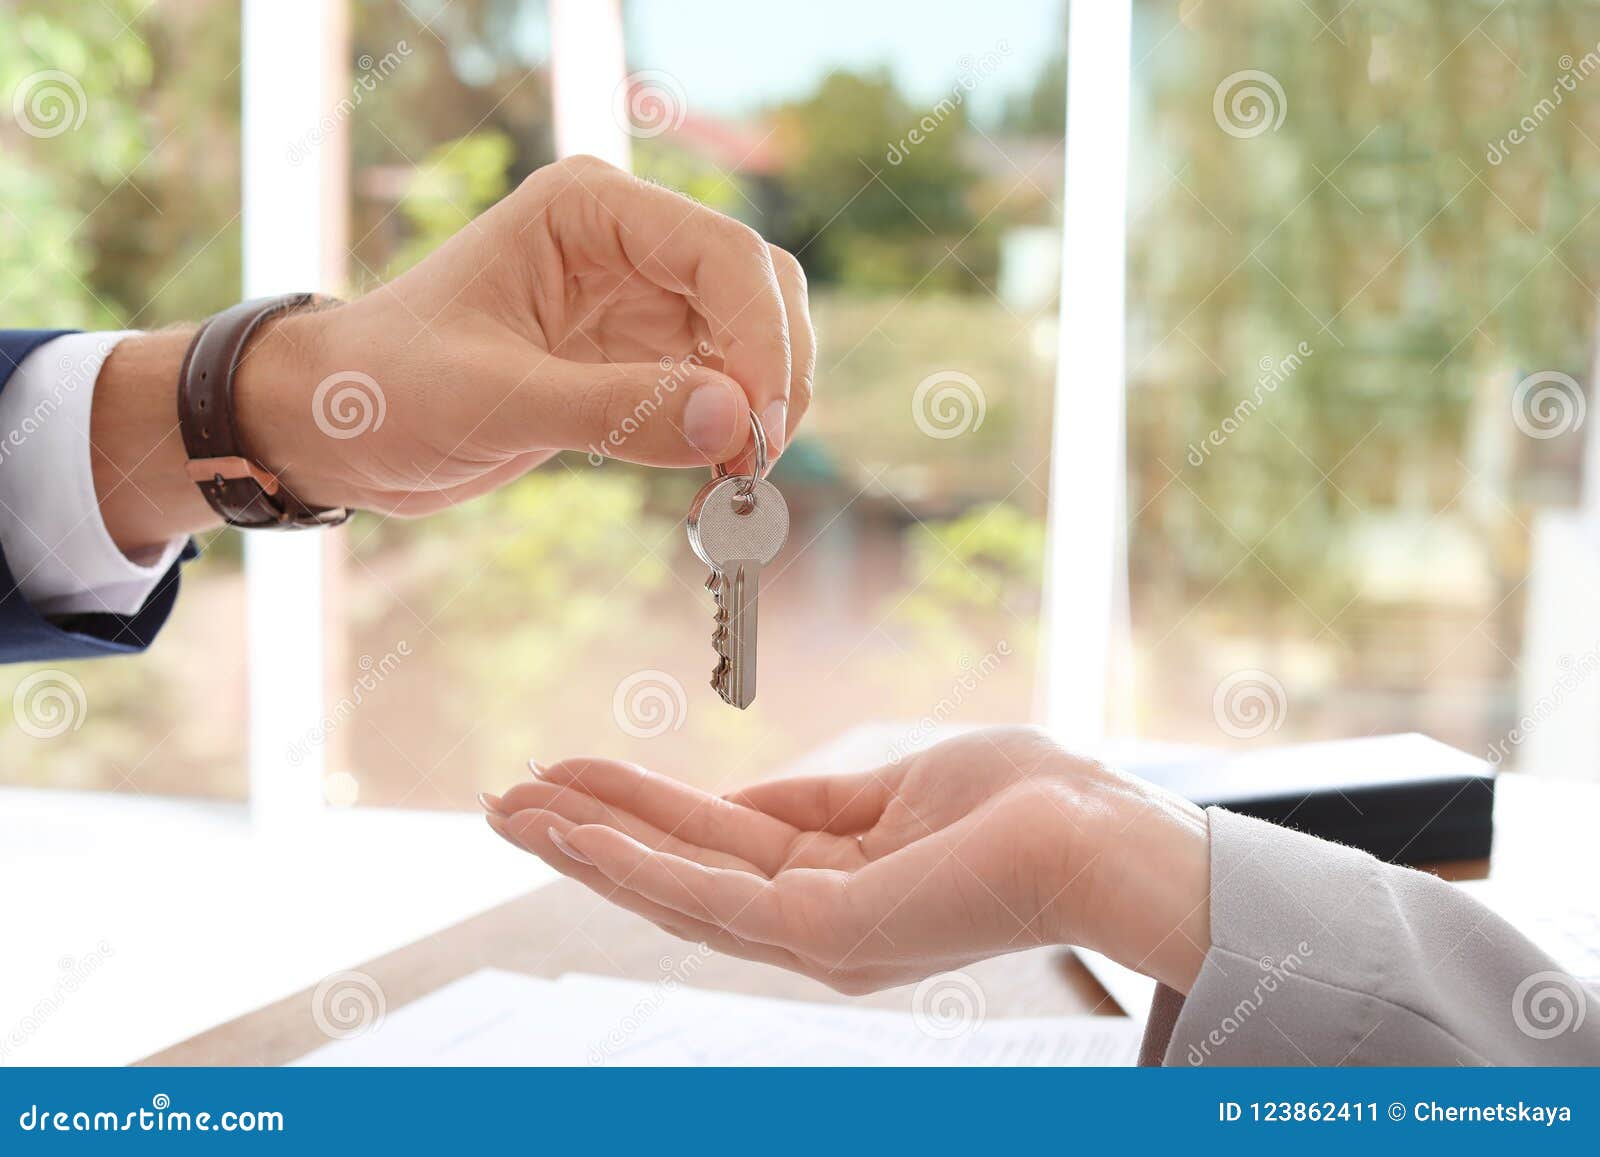 Мужчина дает ключи. Мужчина дает ключи женщине. Мужчина и женщина протягивают ключи от машины. Девушка передает ключи арендатору. Человек протягивает даёт ключи.